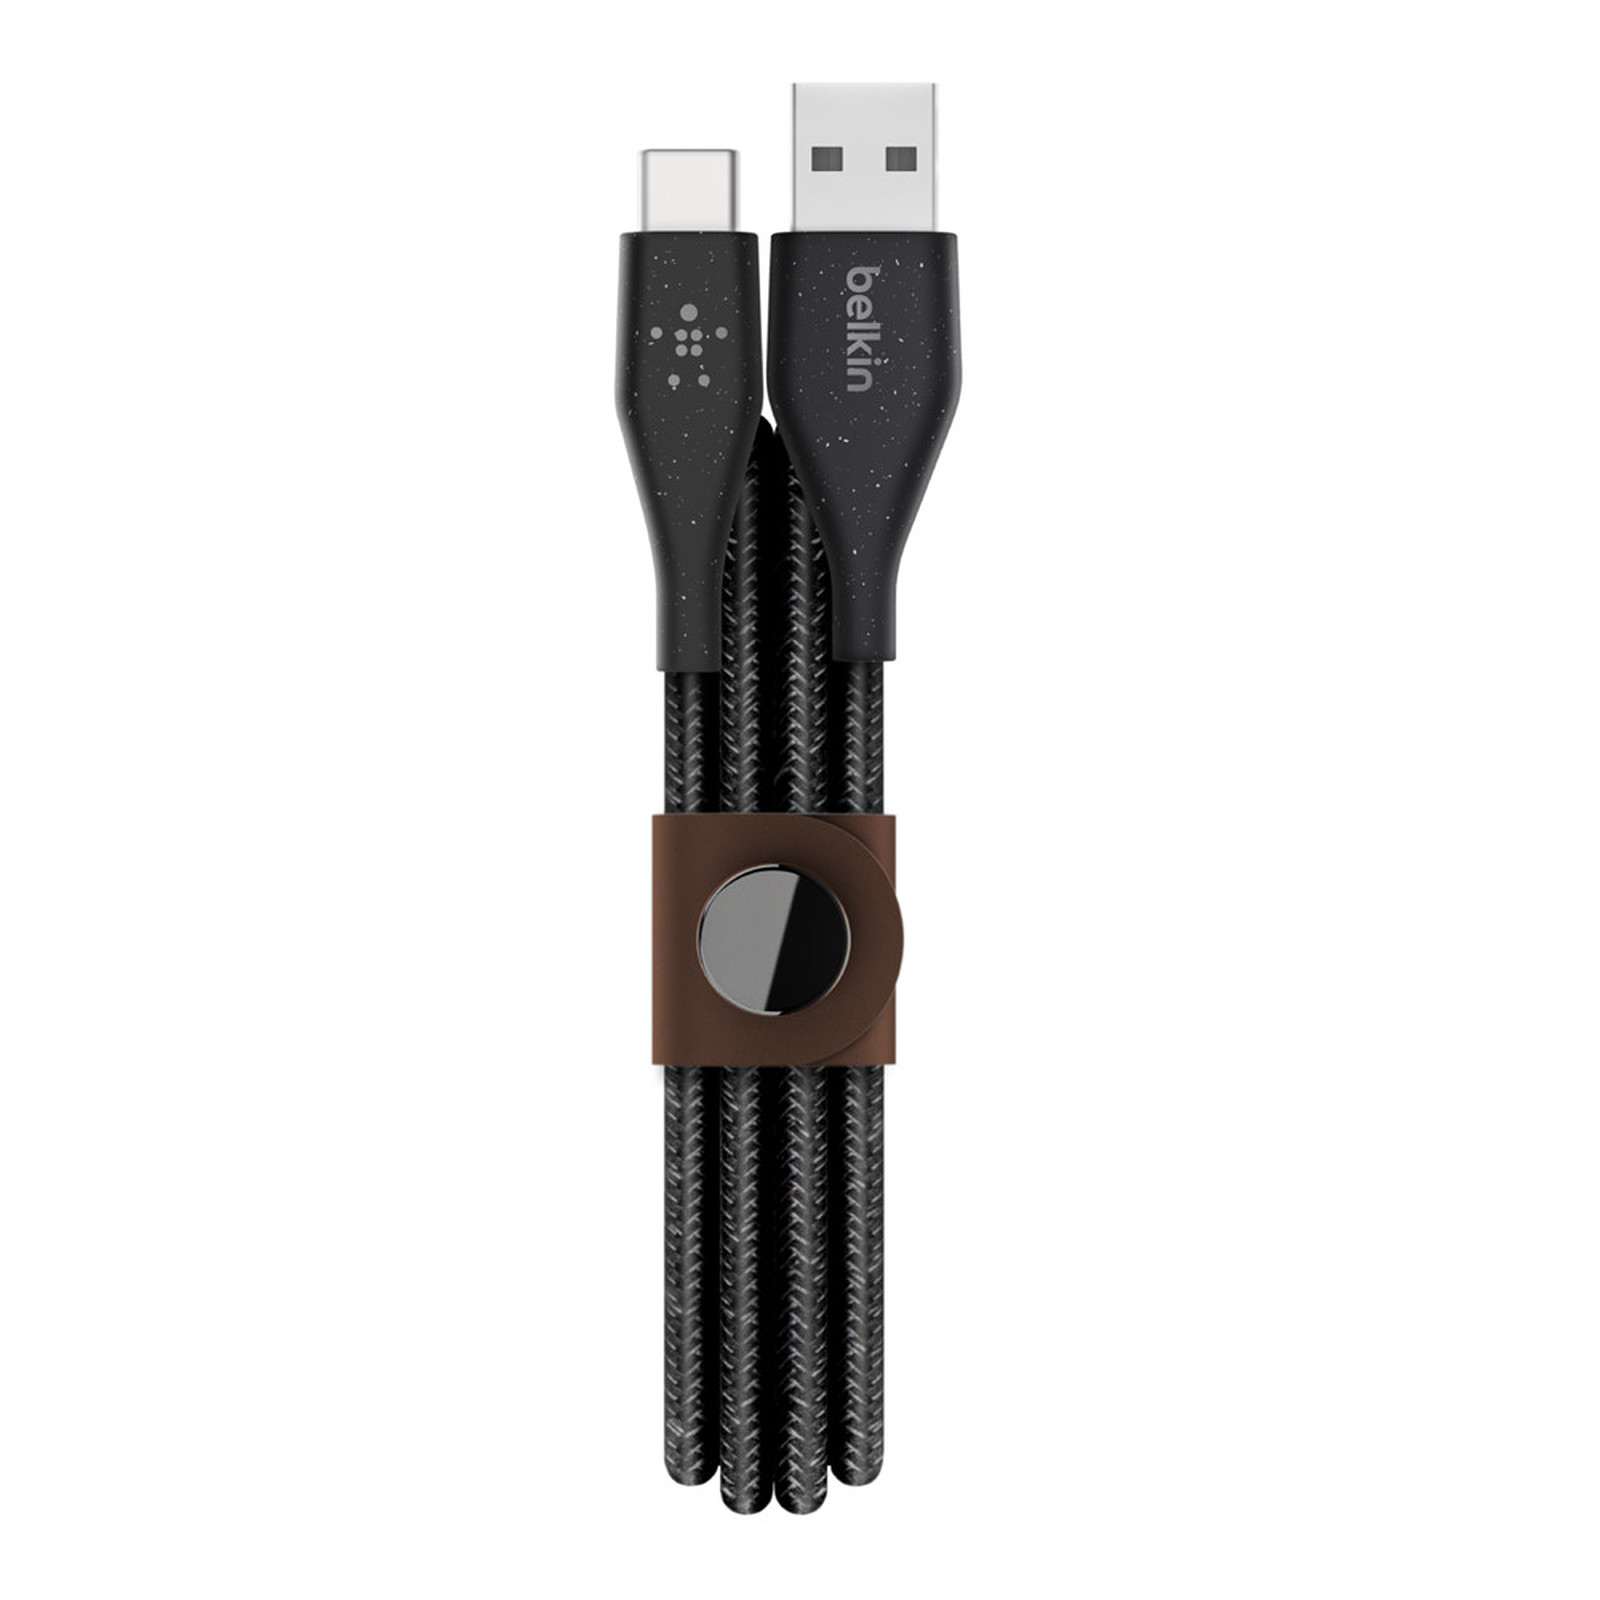 Belkin DuraTek Plus USB-C vers USB-A avec sangle de fermeture (Noir) - 1.2 m - Cable & Adaptateur Belkin